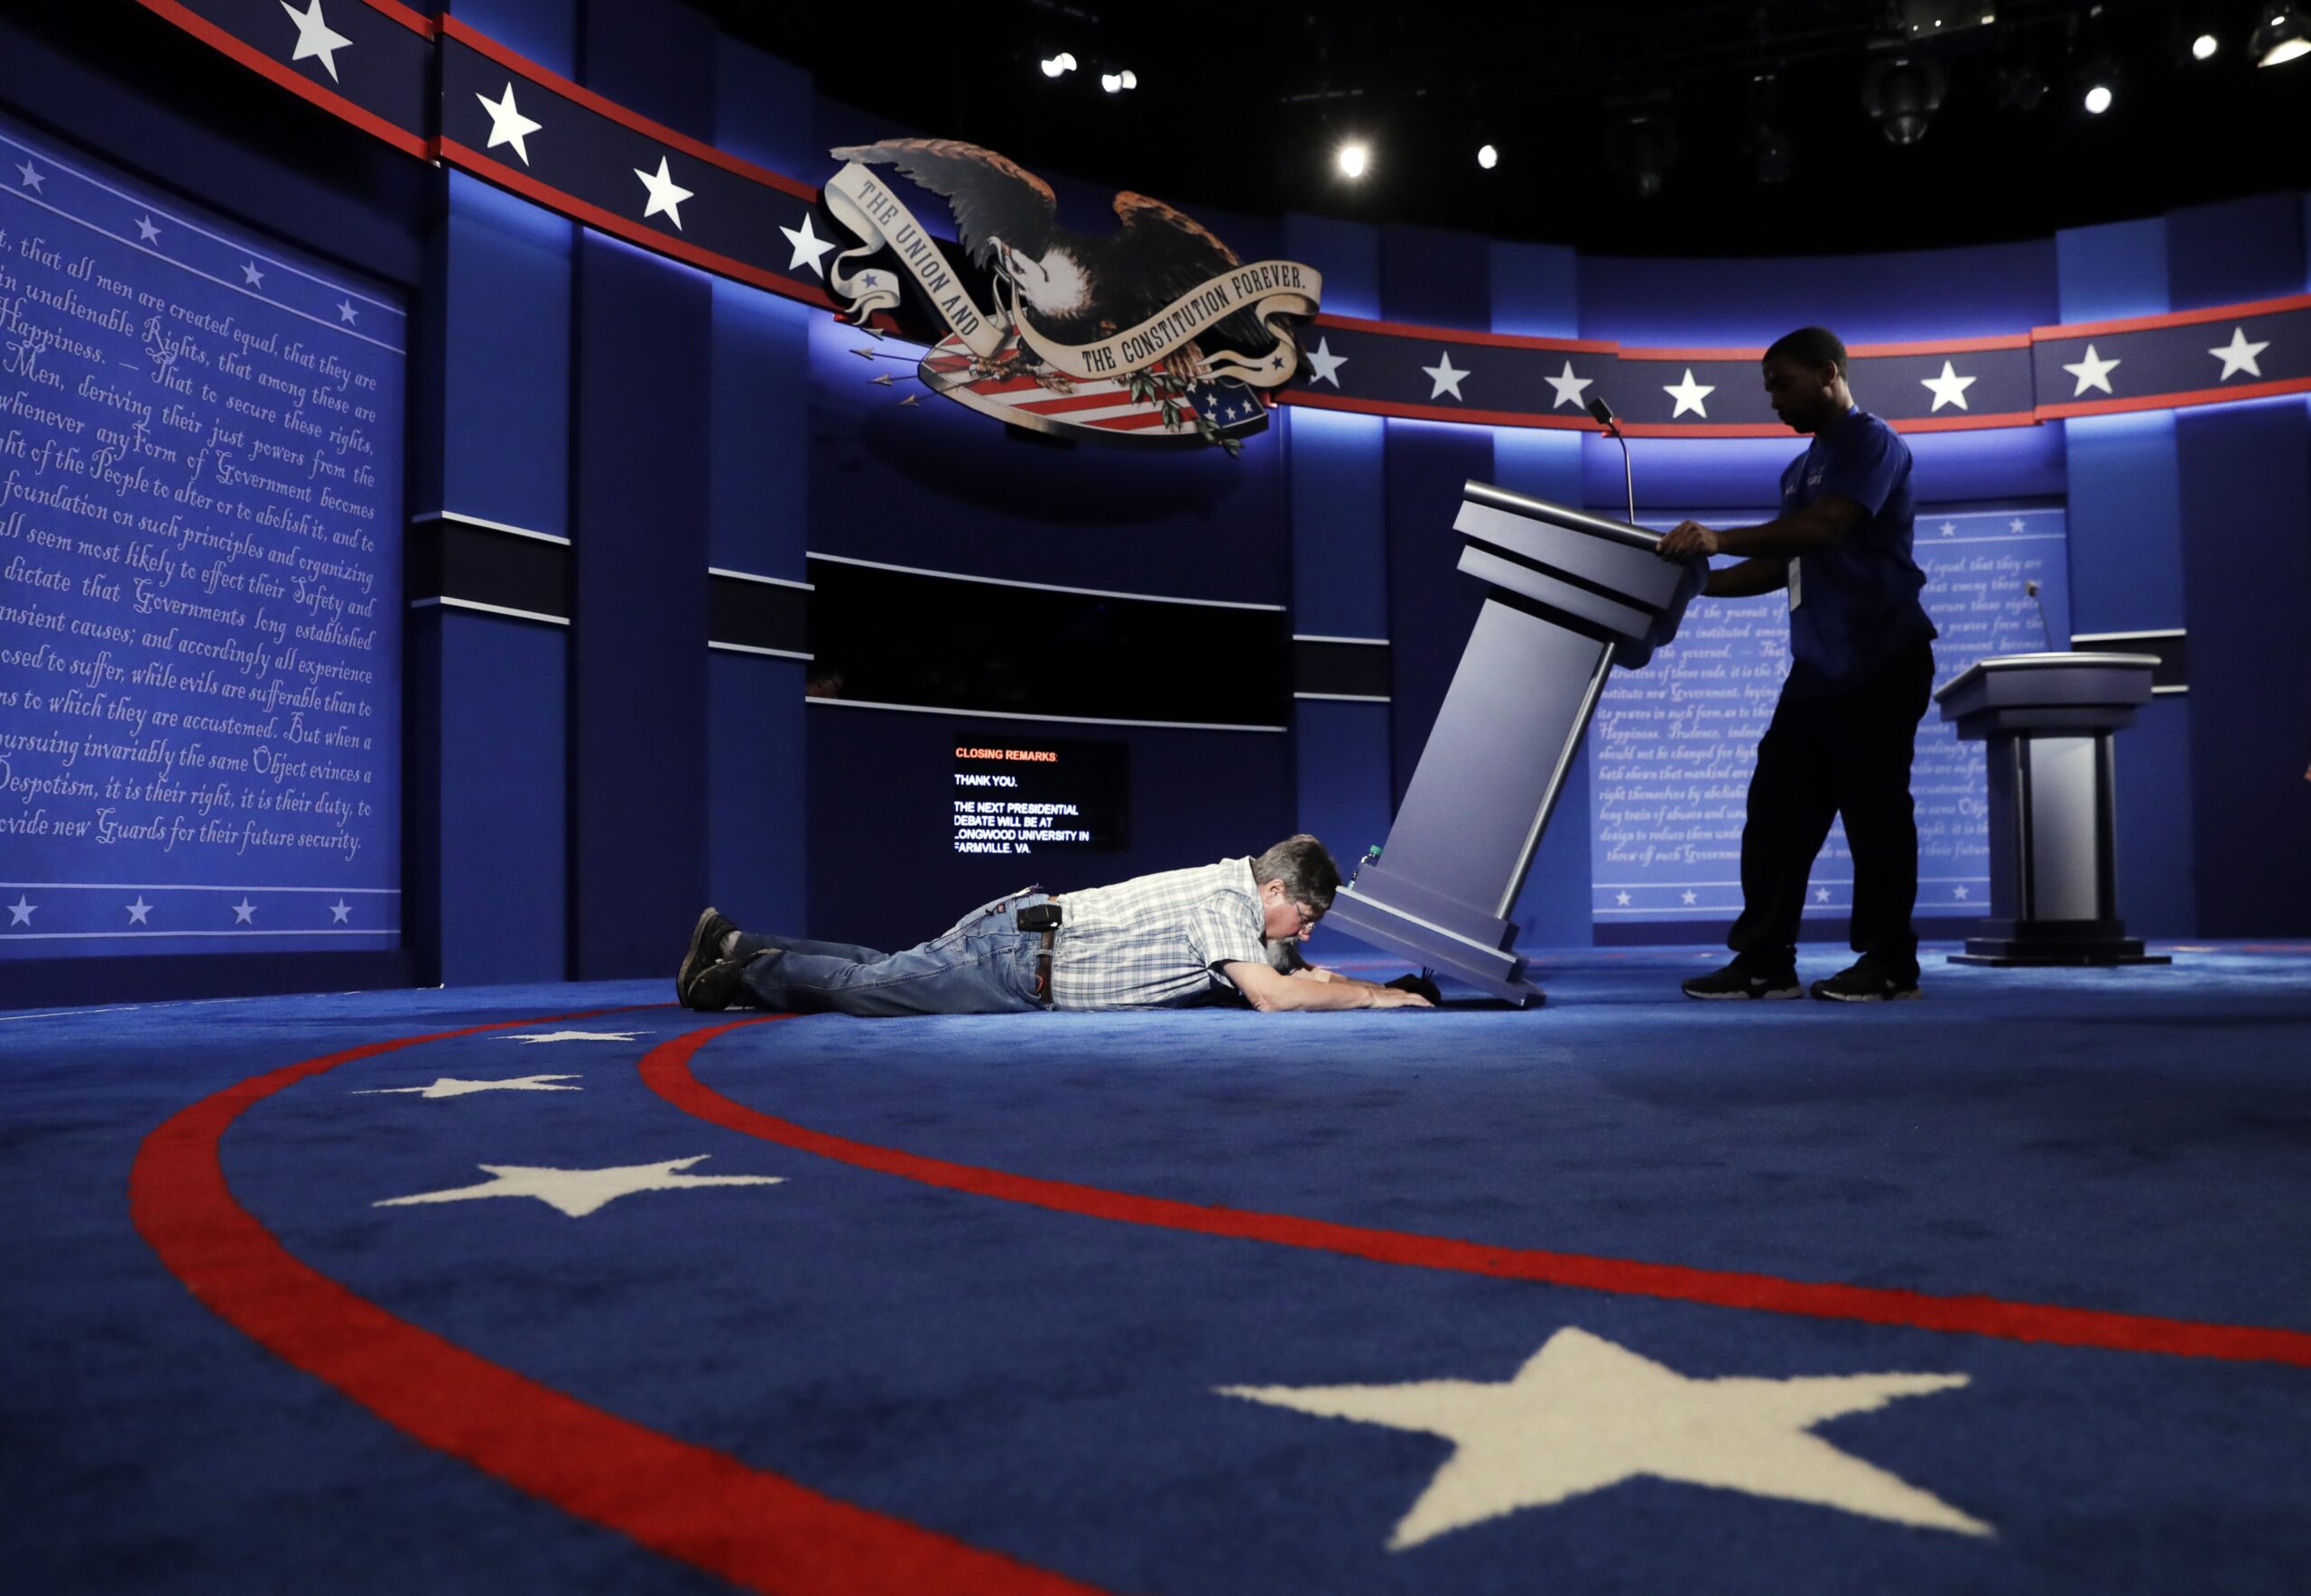 Workers preparing for debate in 2016 presidential election